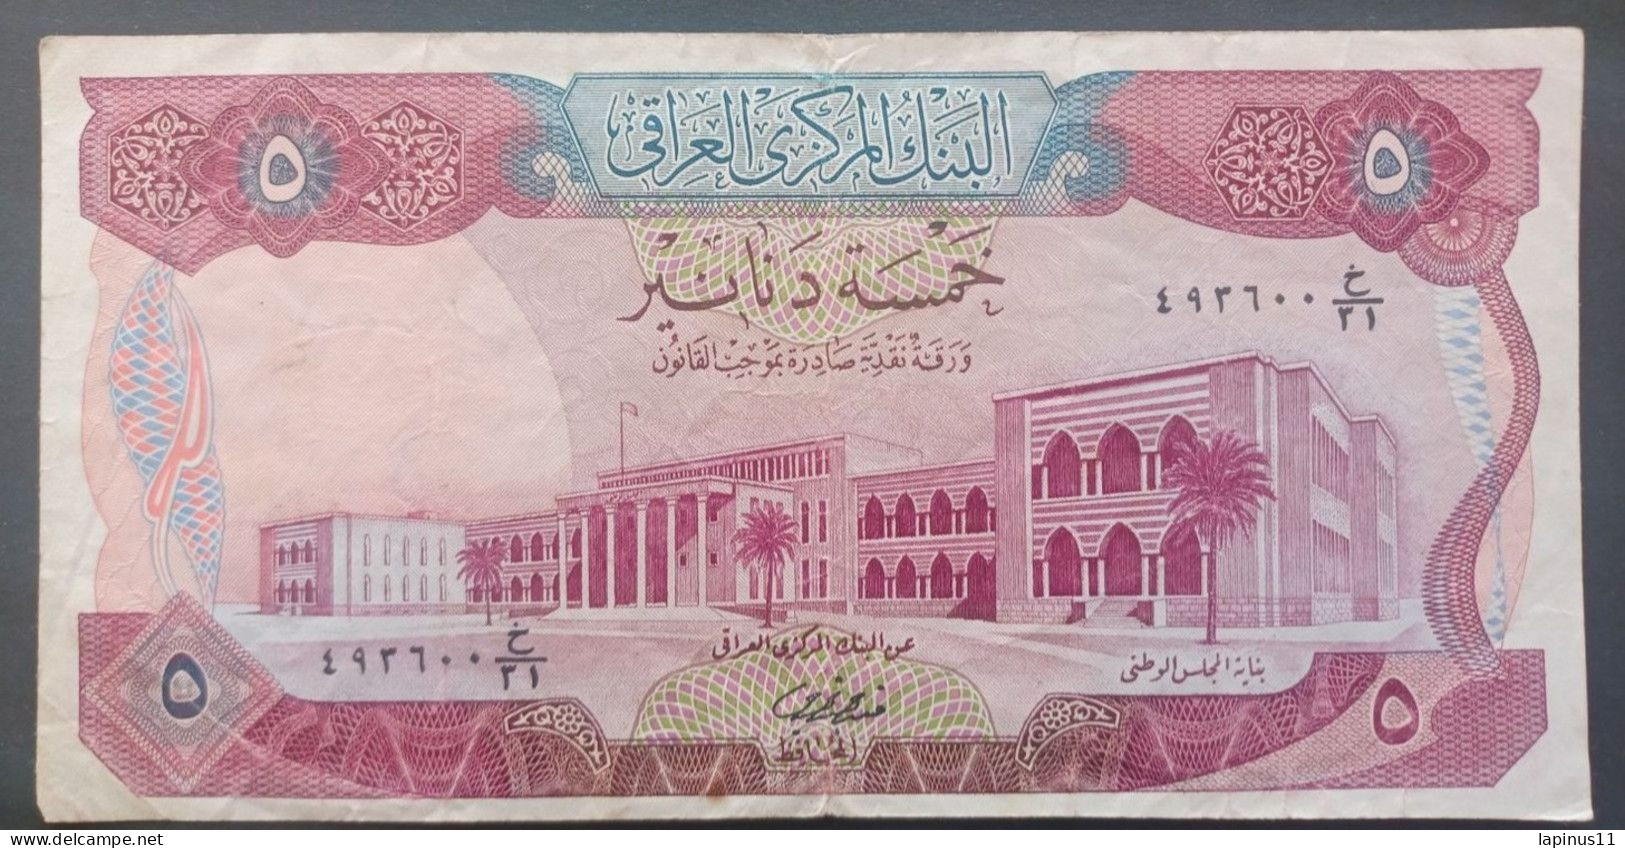 BANKNOTE IRAQ 5 DINARS 1973 CIRCULATED - Iraq